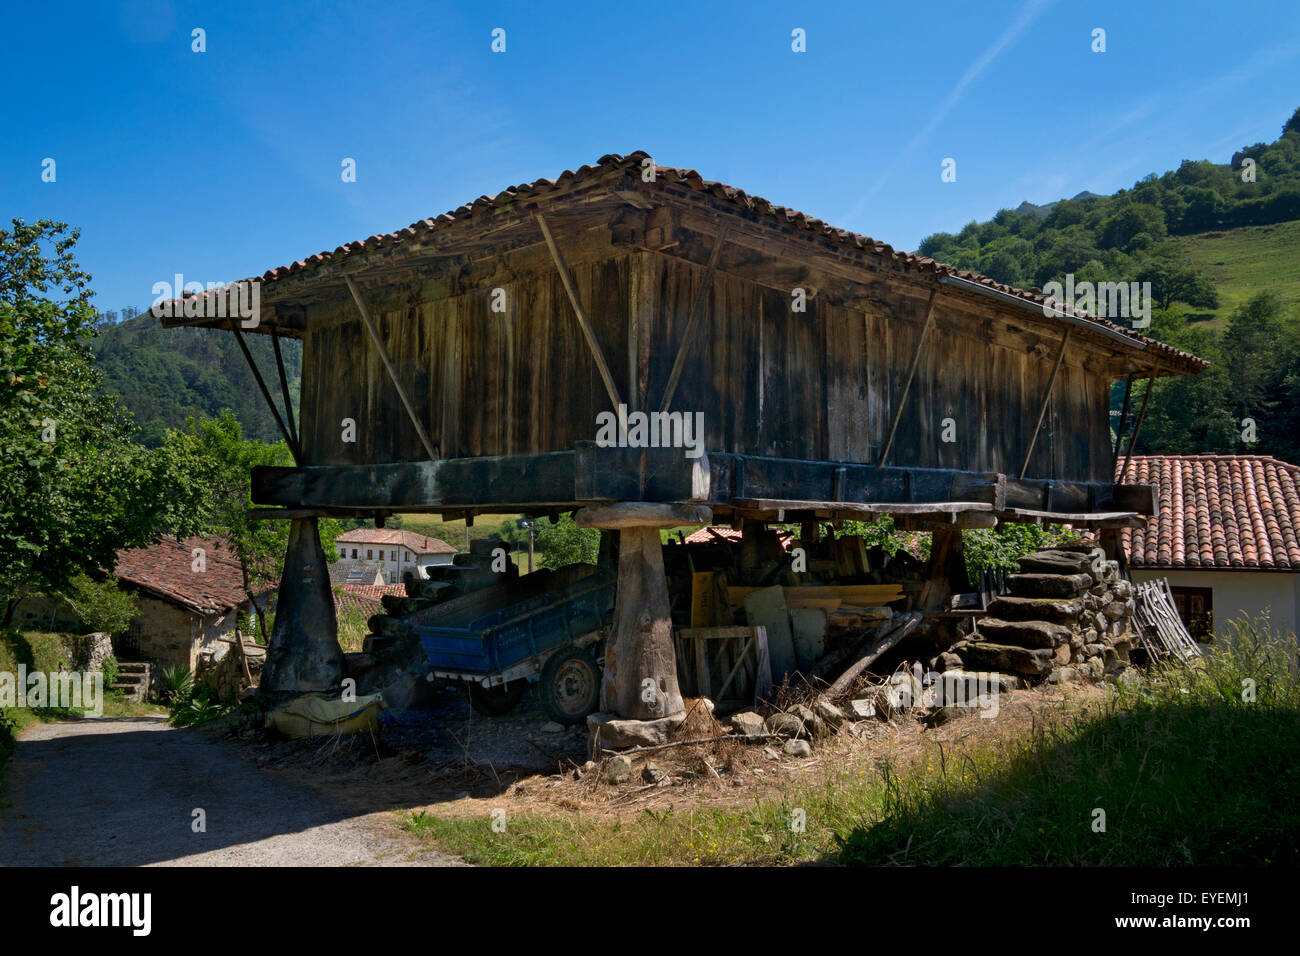 Ancien grenier traditionnel Horreo magasin dans village rural des Asturies, dans le Nord de l'Espagne Banque D'Images